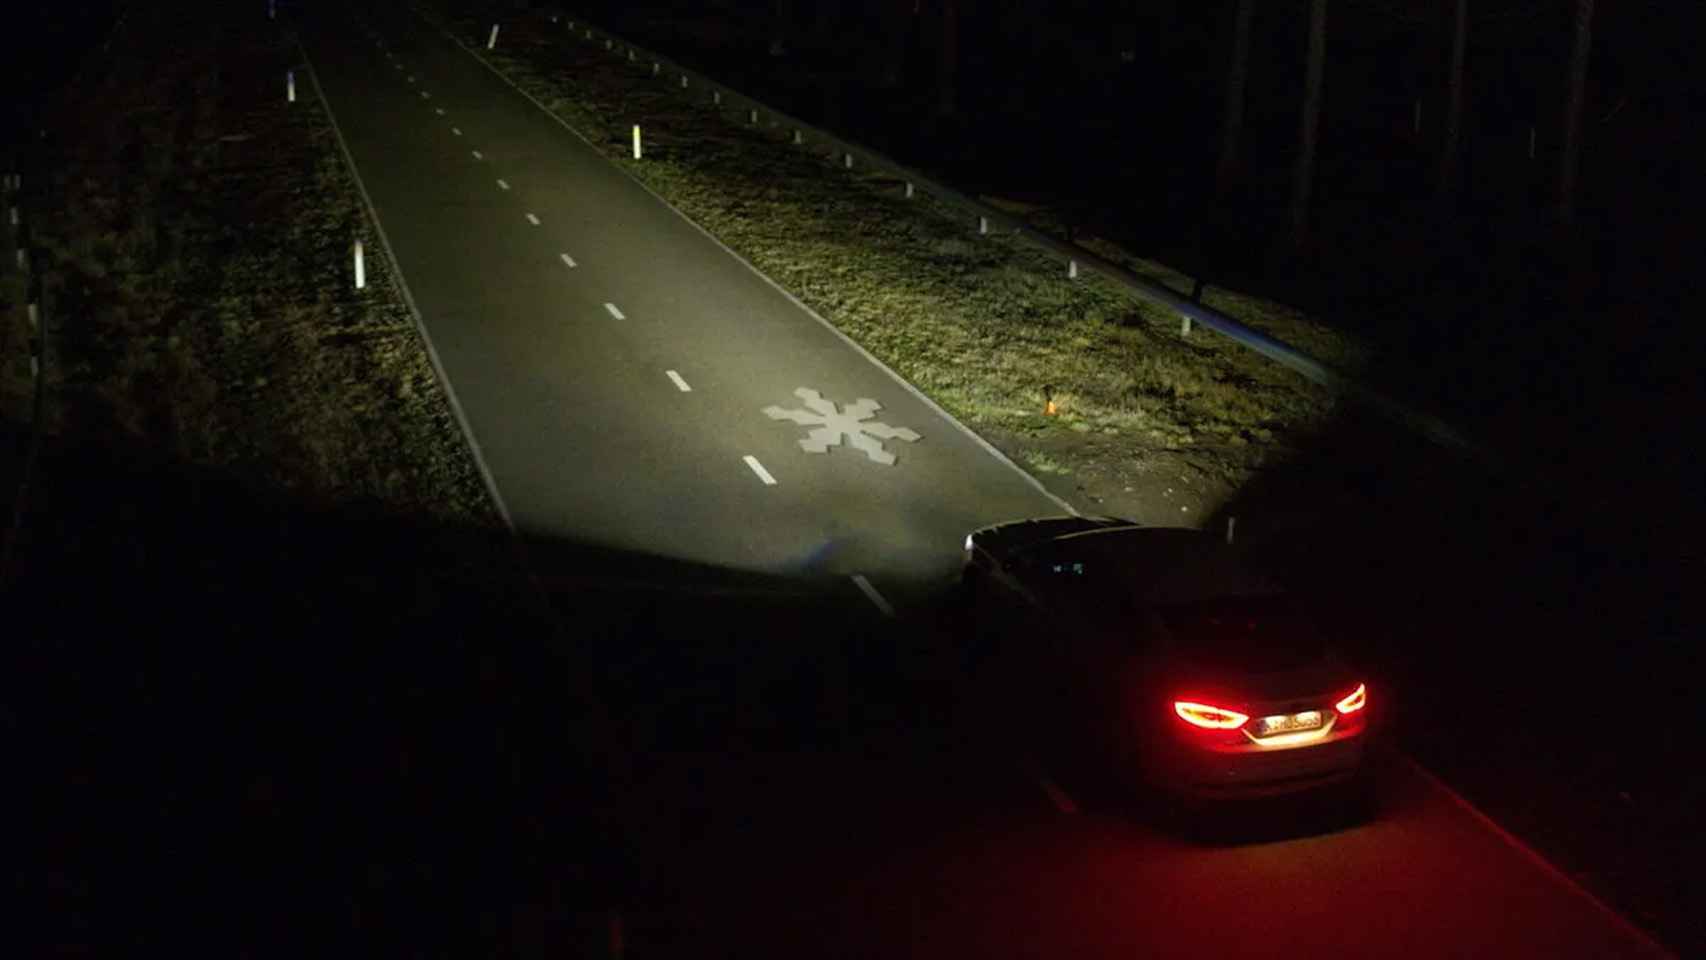 Iluminación de una señal en la carretera.